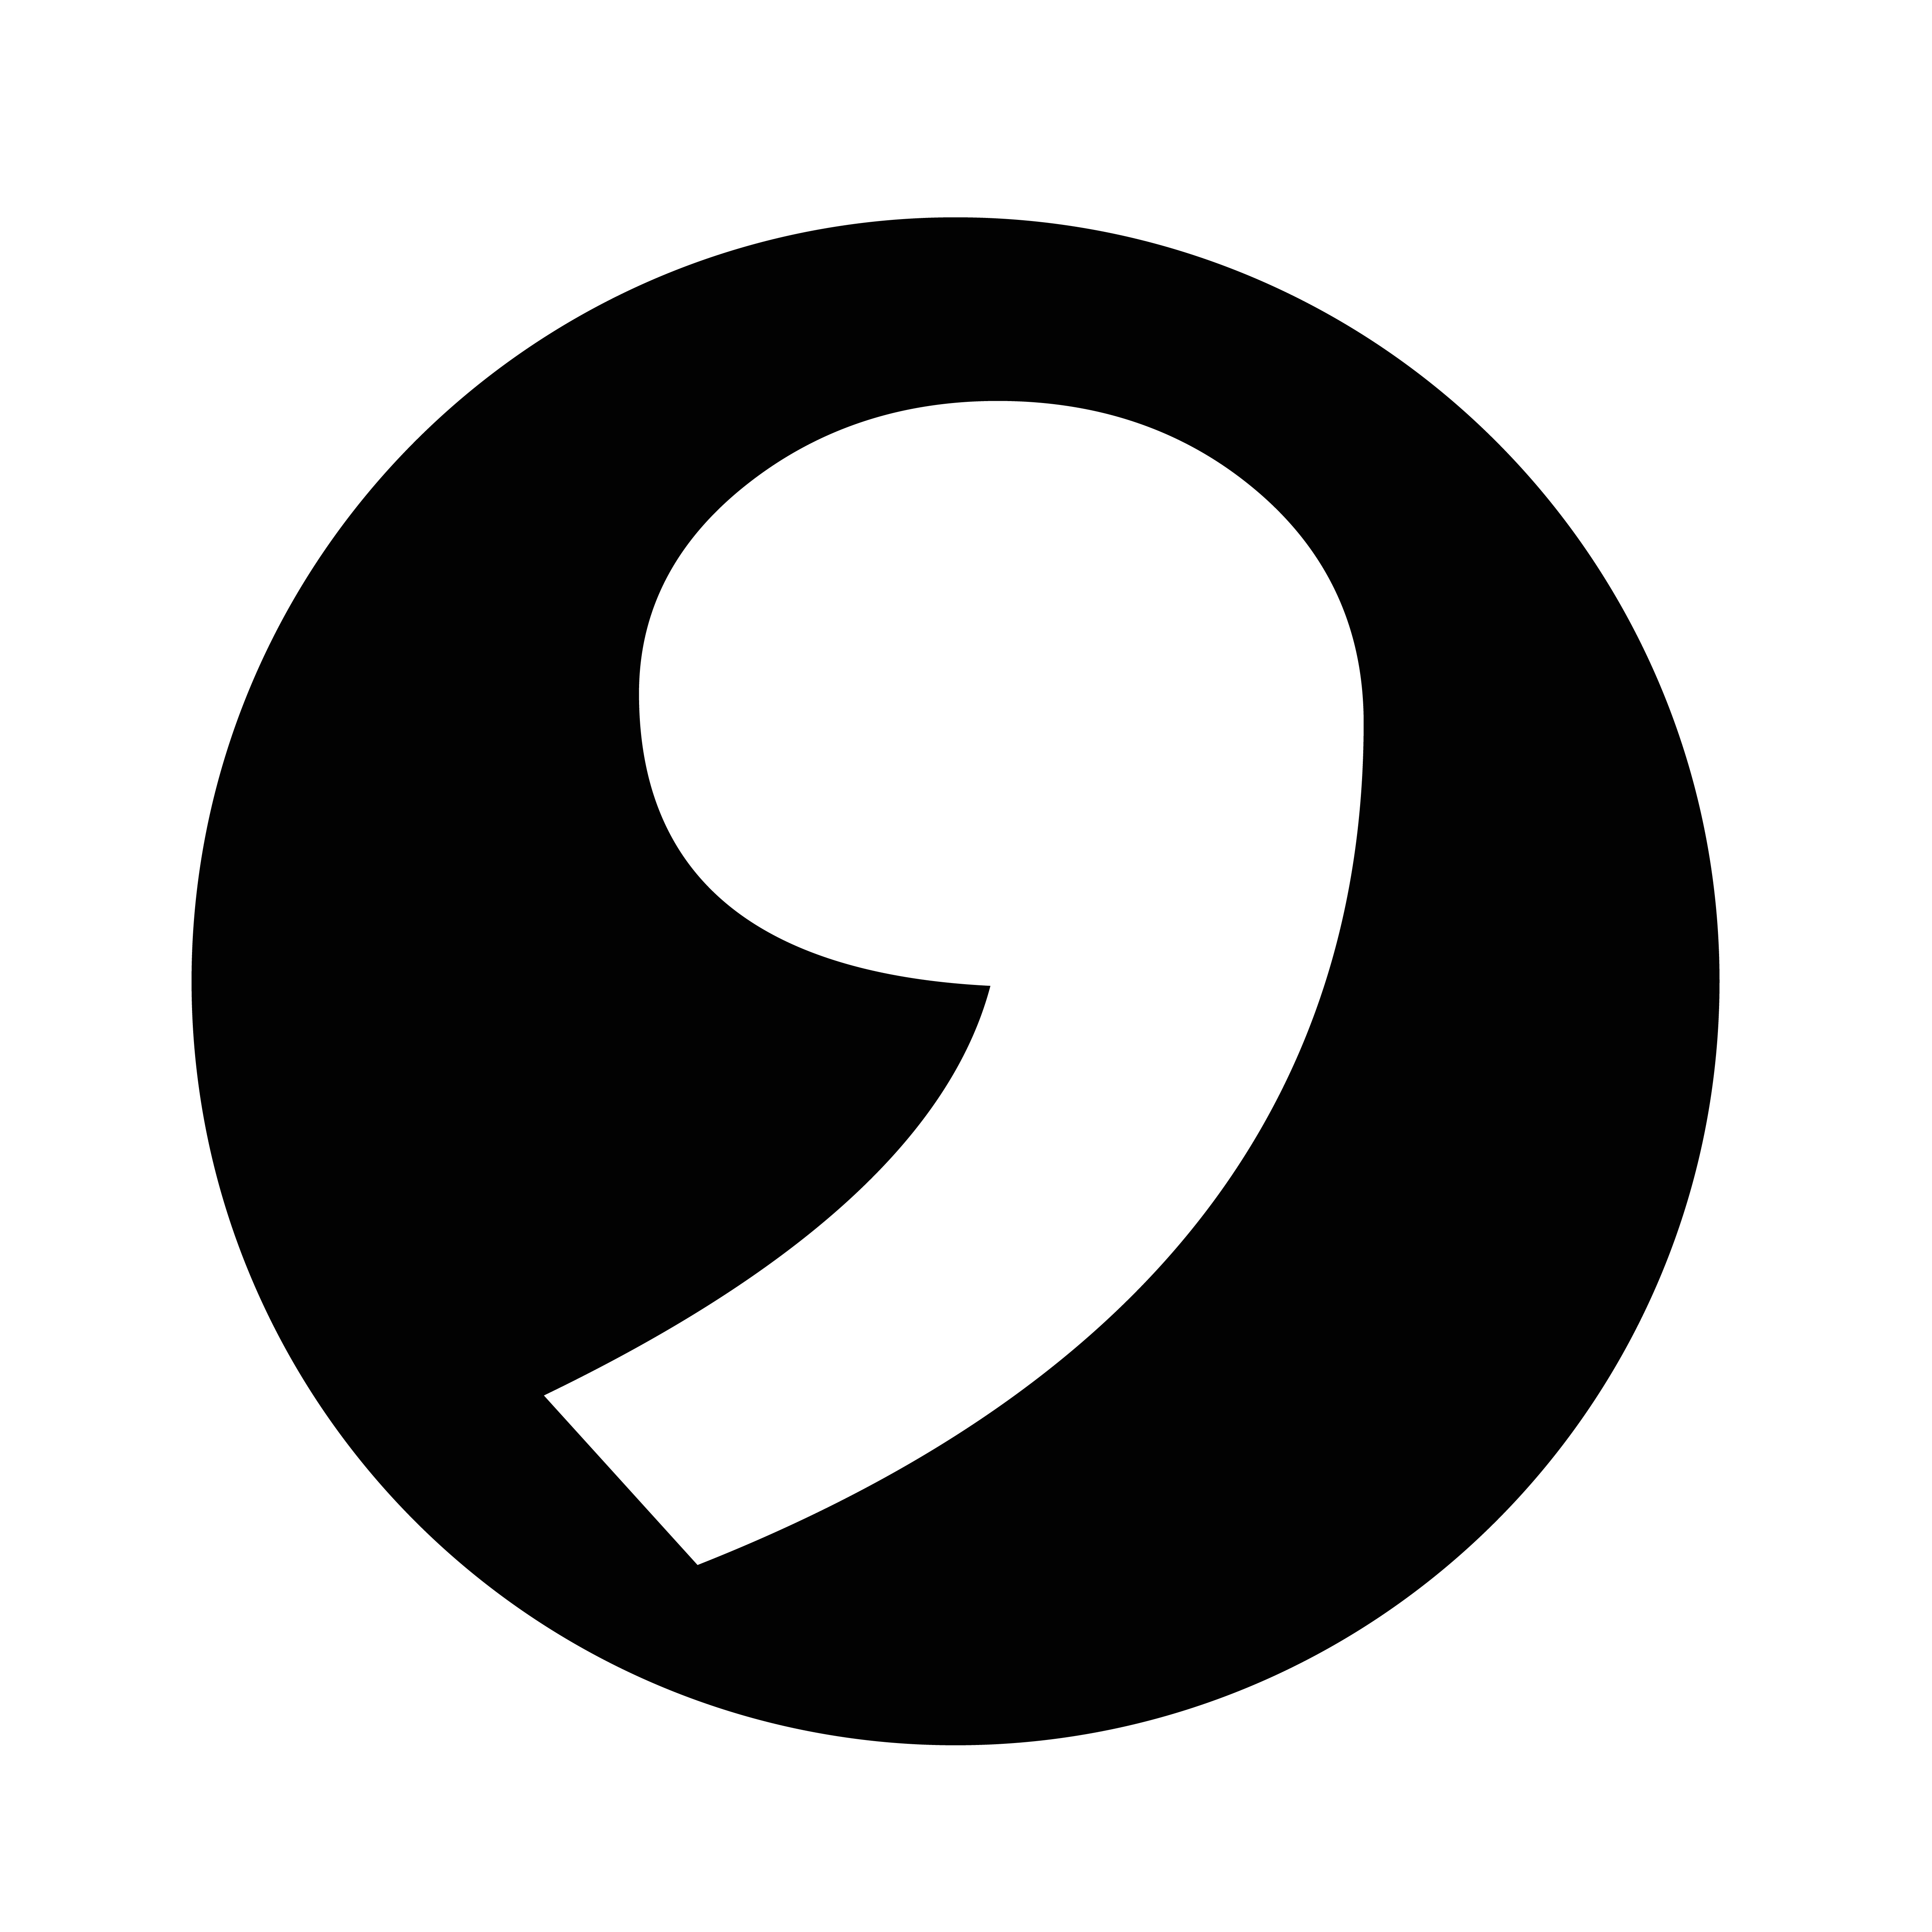 The Oxford Comma Debate - TrackFive